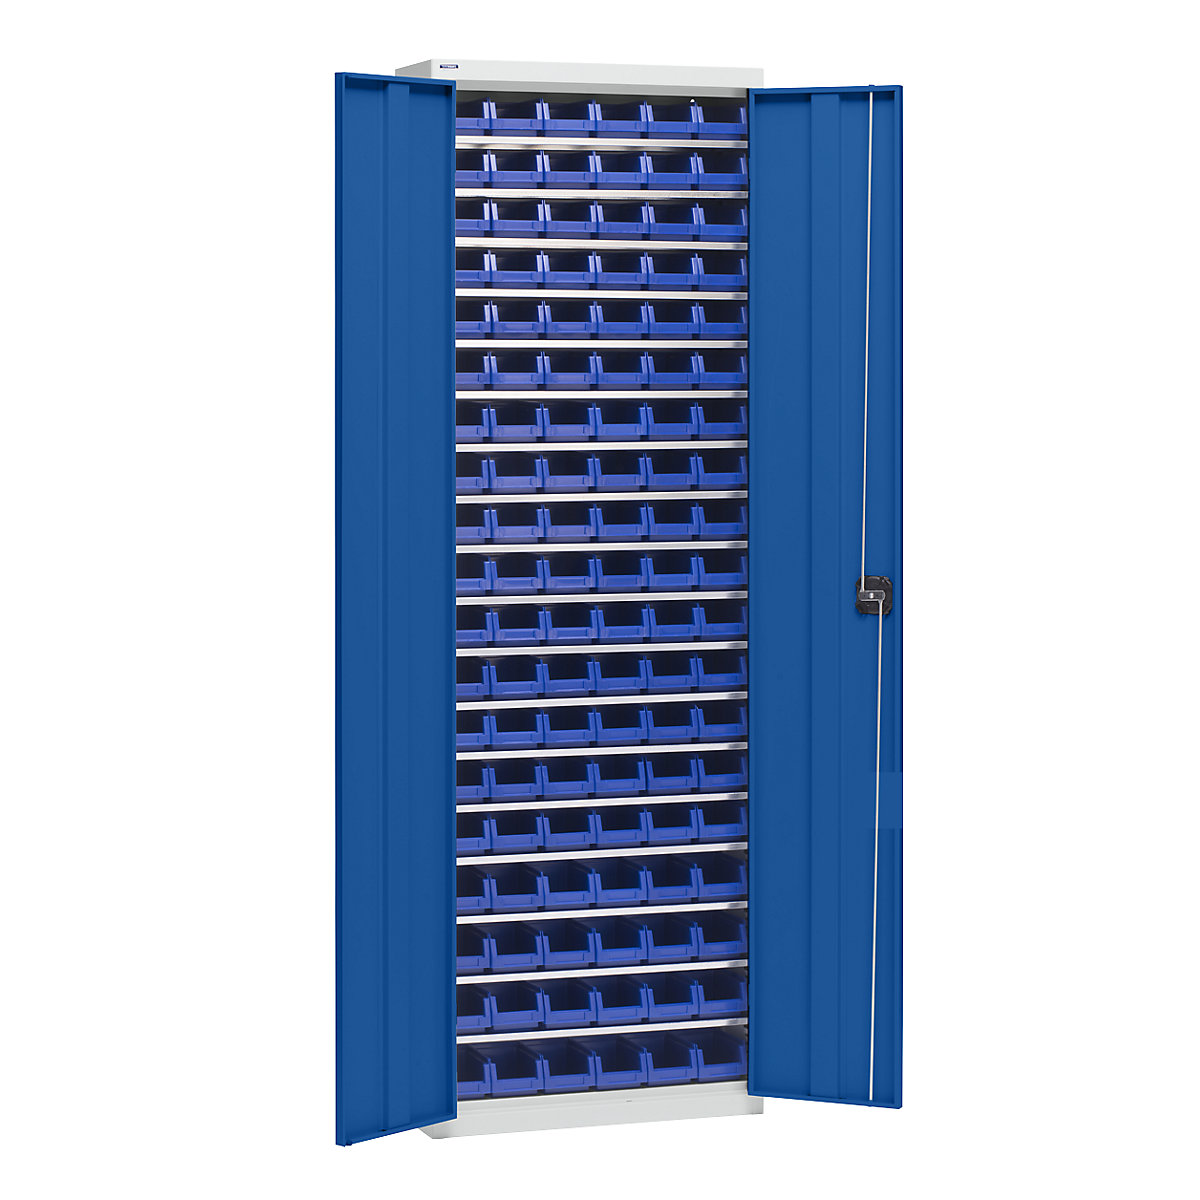 Materiaalkast met magazijnbakken – eurokraft pro, hoogte 2000 mm, 18 legborden, lichtgrijs / gentiaanblauw-5